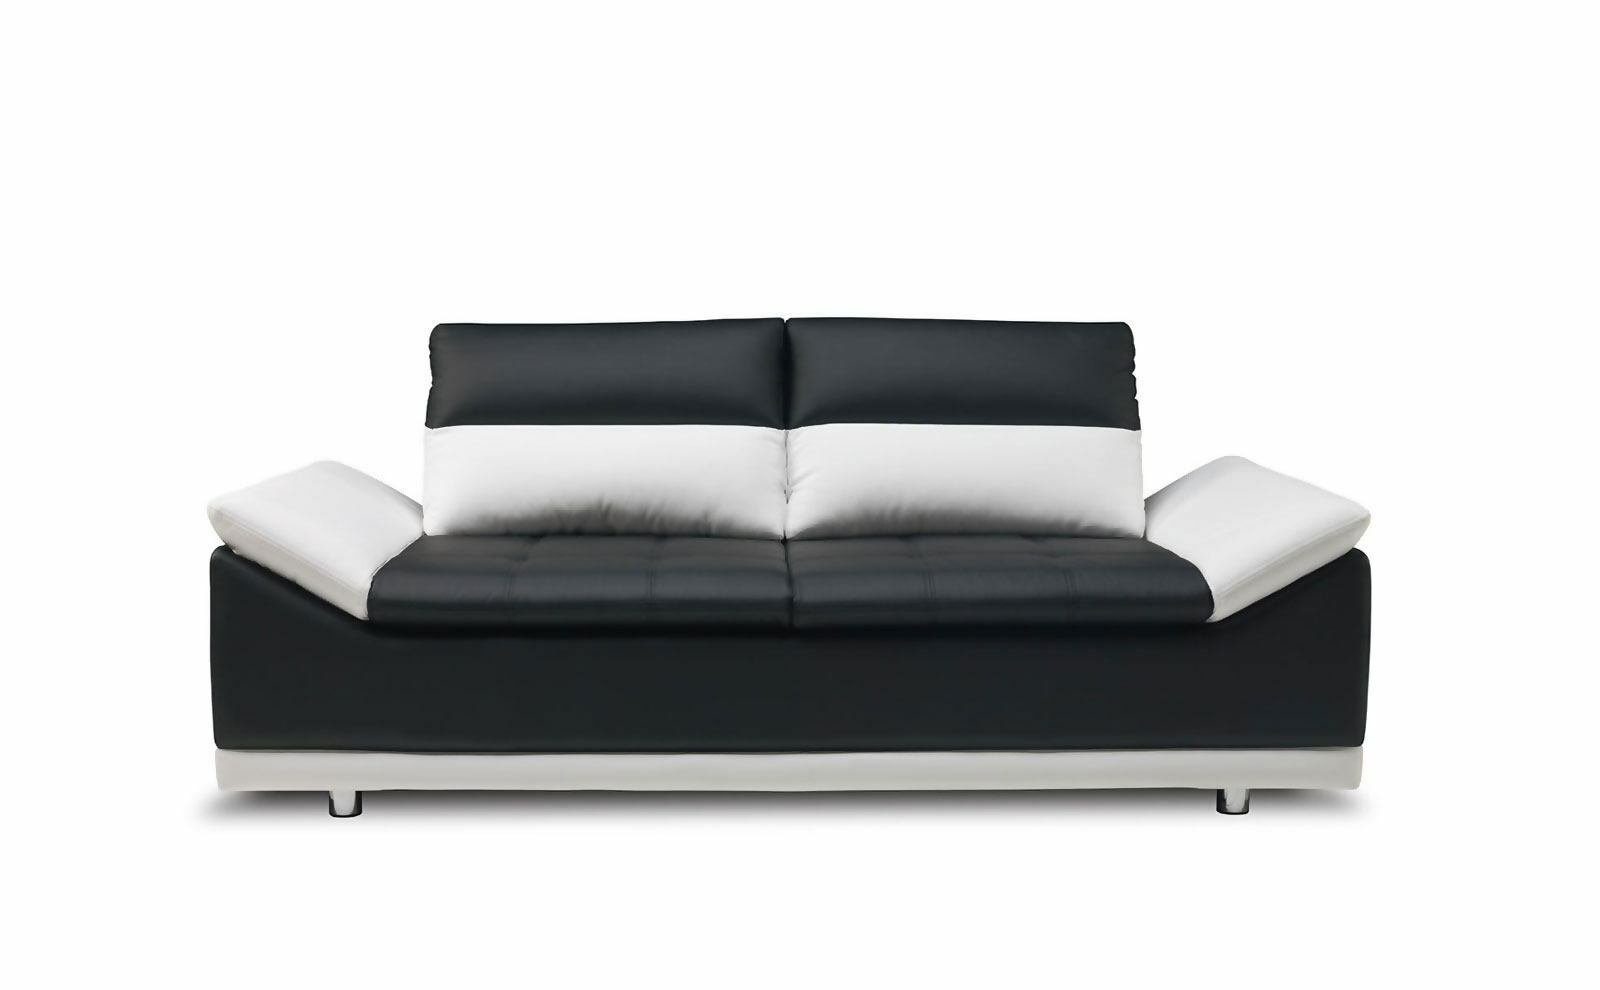 JVmoebel Sofa Schwarze Sofagarnitur Moderne Sitzer Made Europe in Luxus 3+2 Couchen Möbel